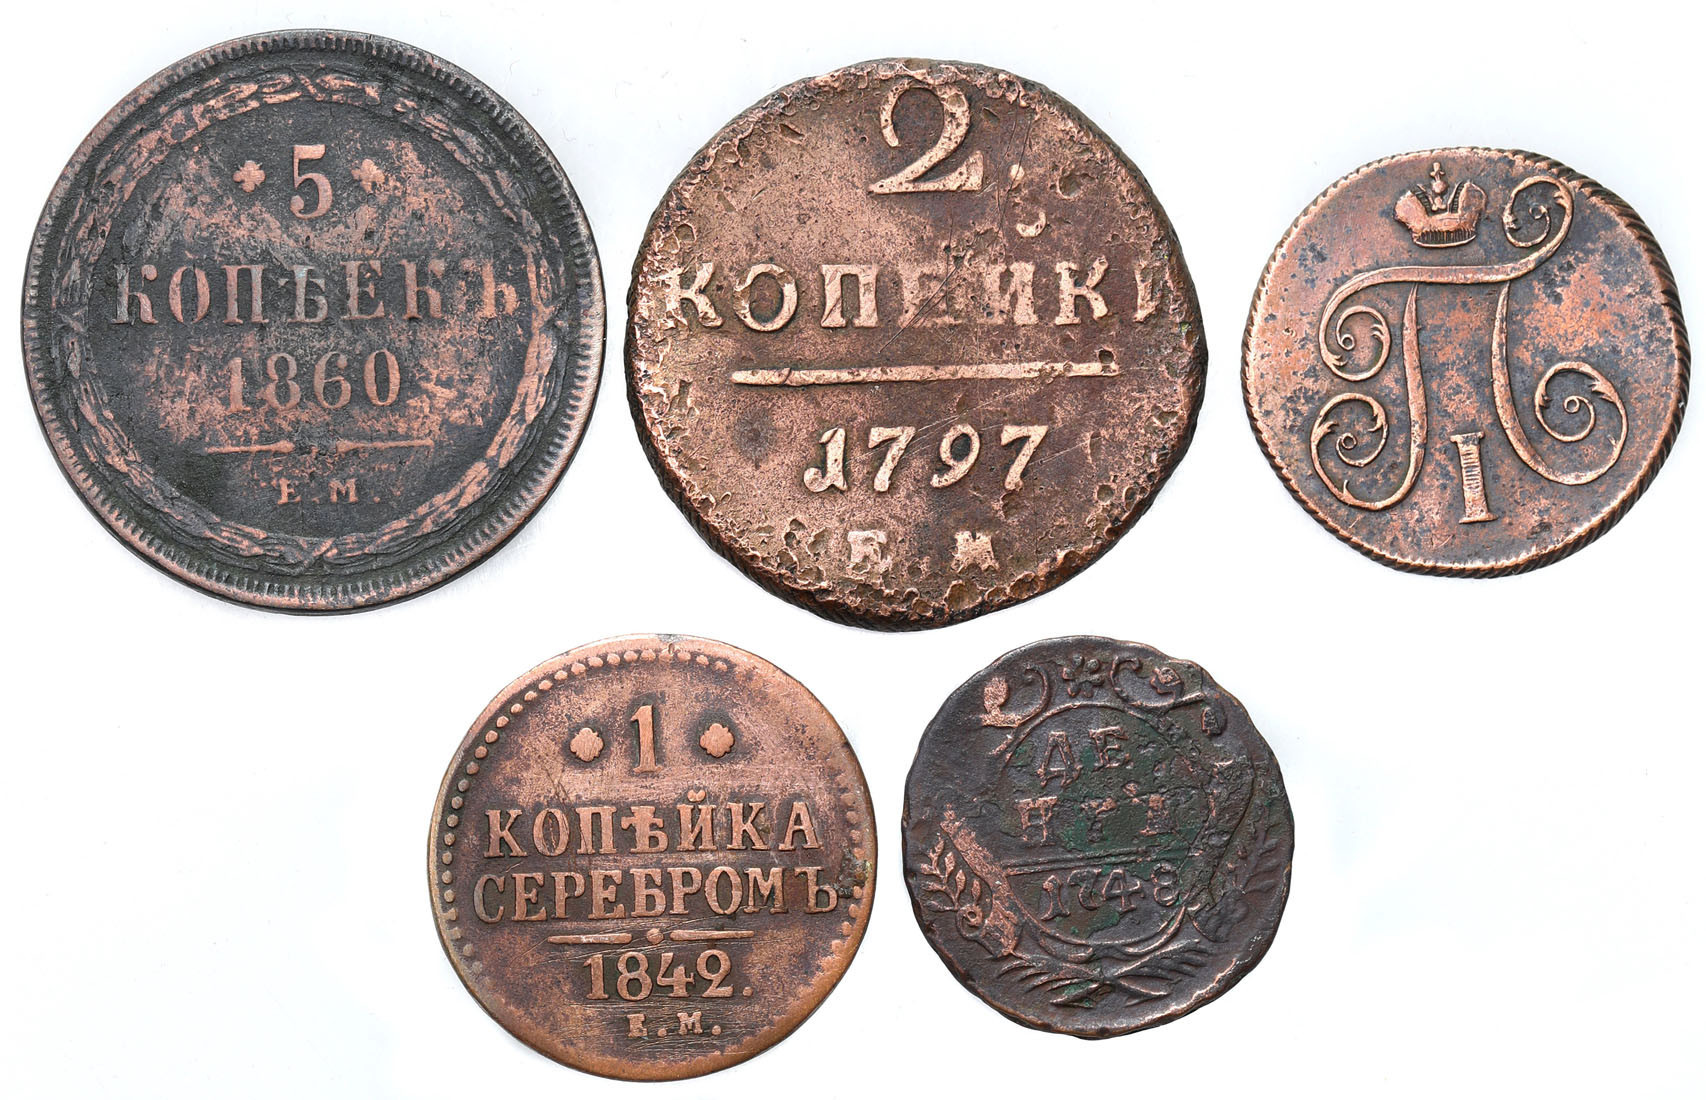 Rosja, Denga, kopiejka, 2 kopiejki, 50 kopiejek 1748-1860, zestaw 5 monet